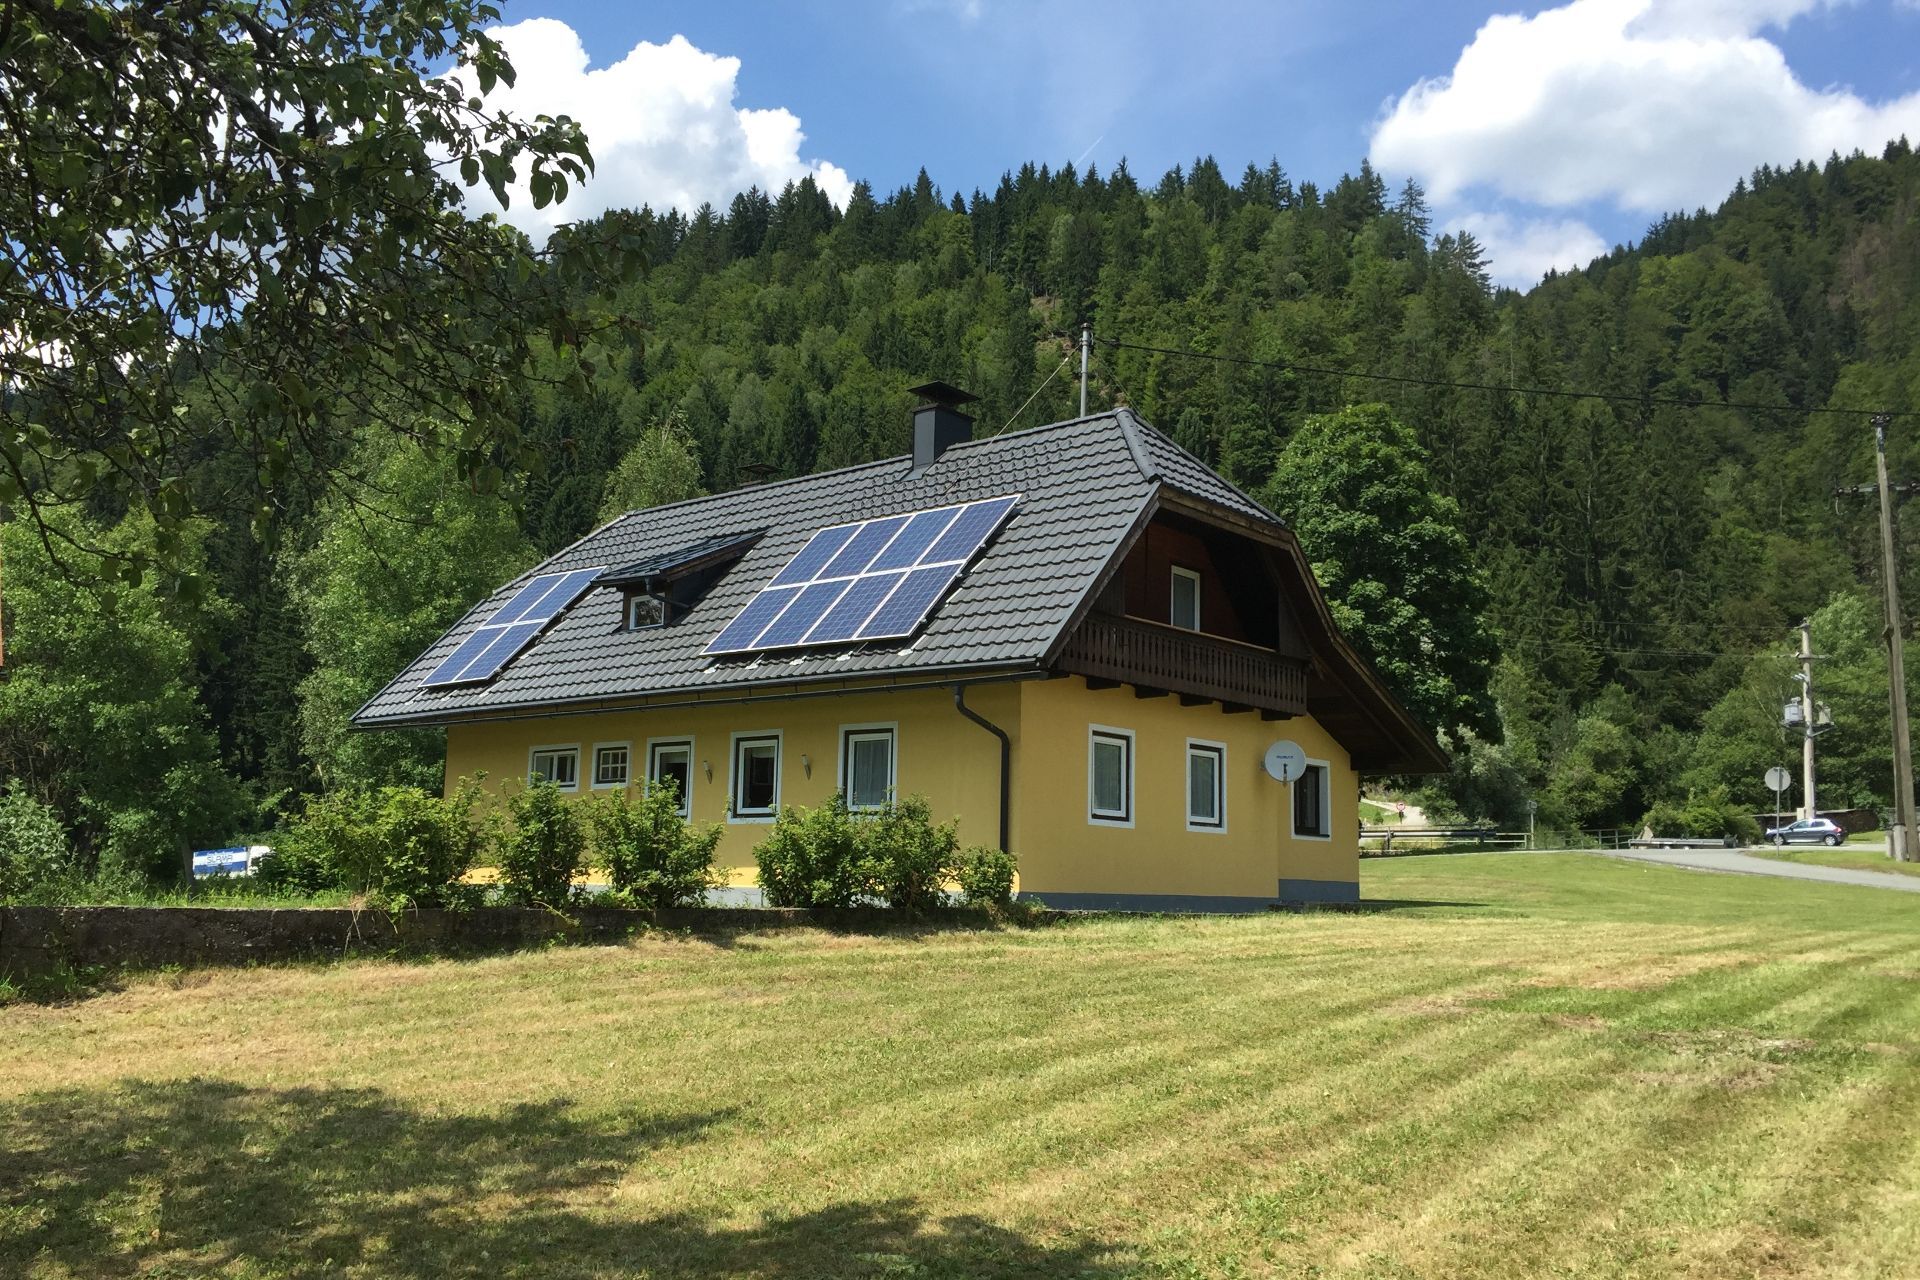 Großzügiges, gemütliches Ferienhaus für 8 Personen direkt im Hotel Gasthof Strasswirt am Nassfeld in Kärnten